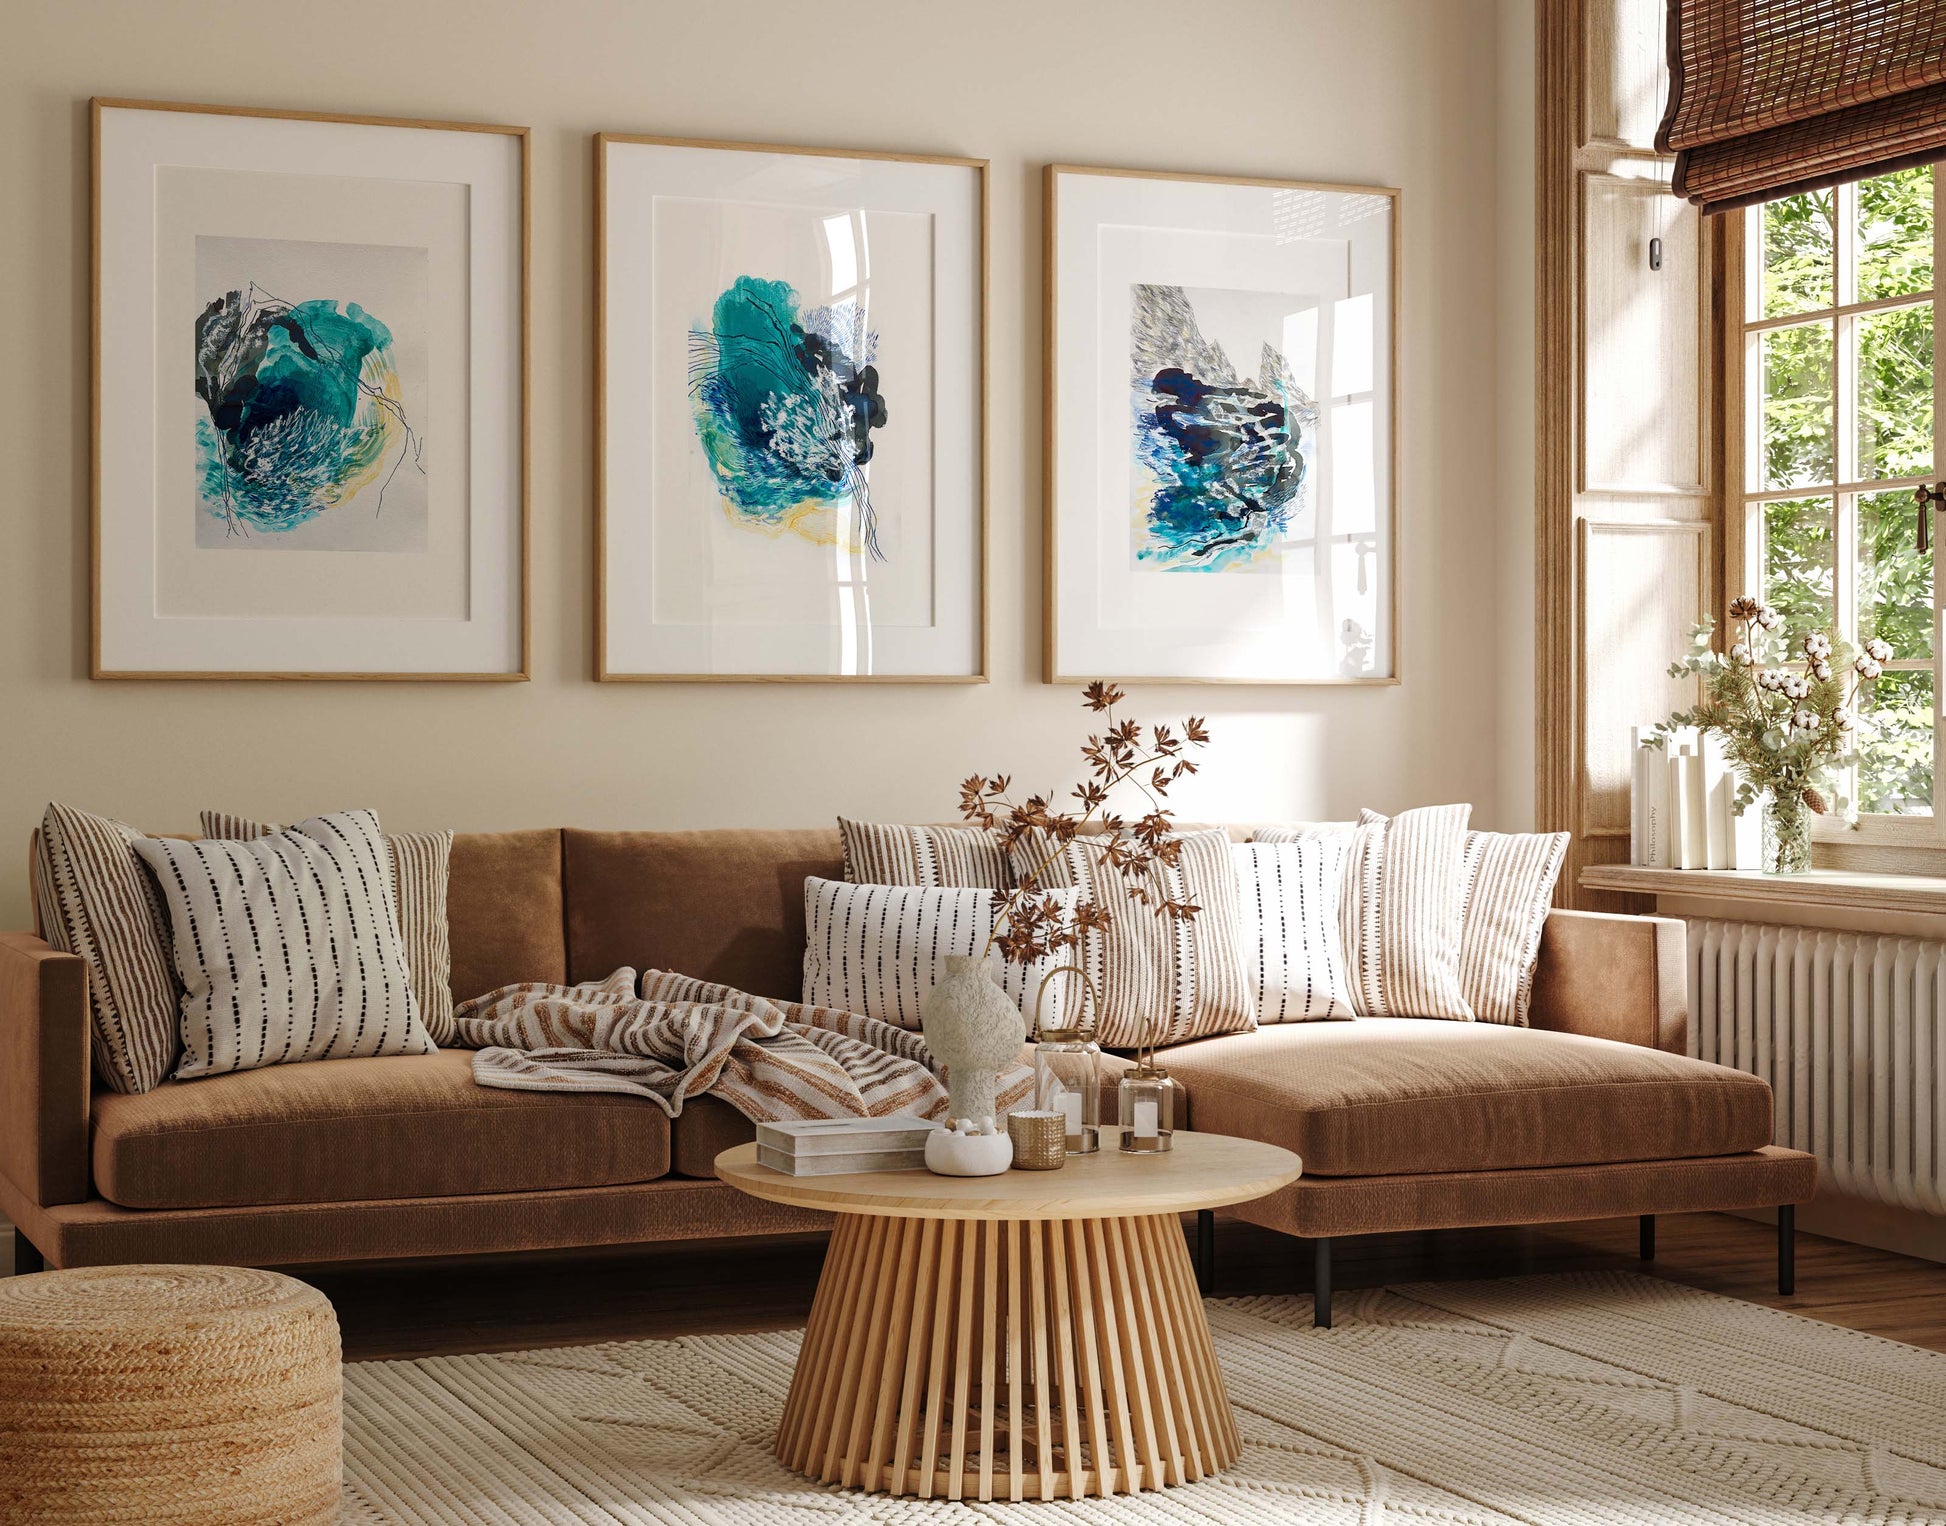 Adraga ocean abstract paintings living room 